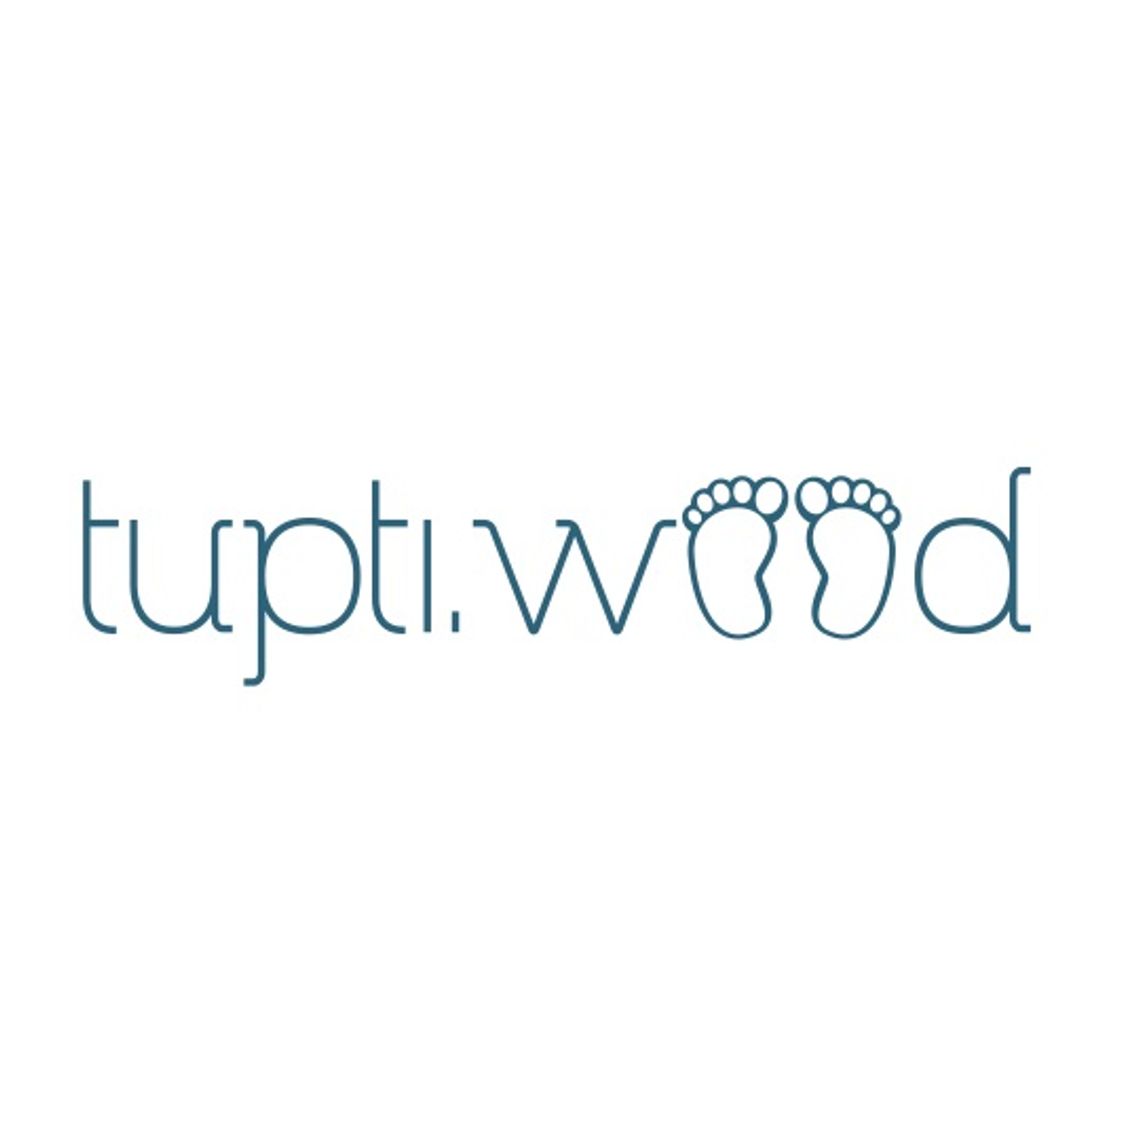 Tupti.wood - wyjątkowe produkty Montessori